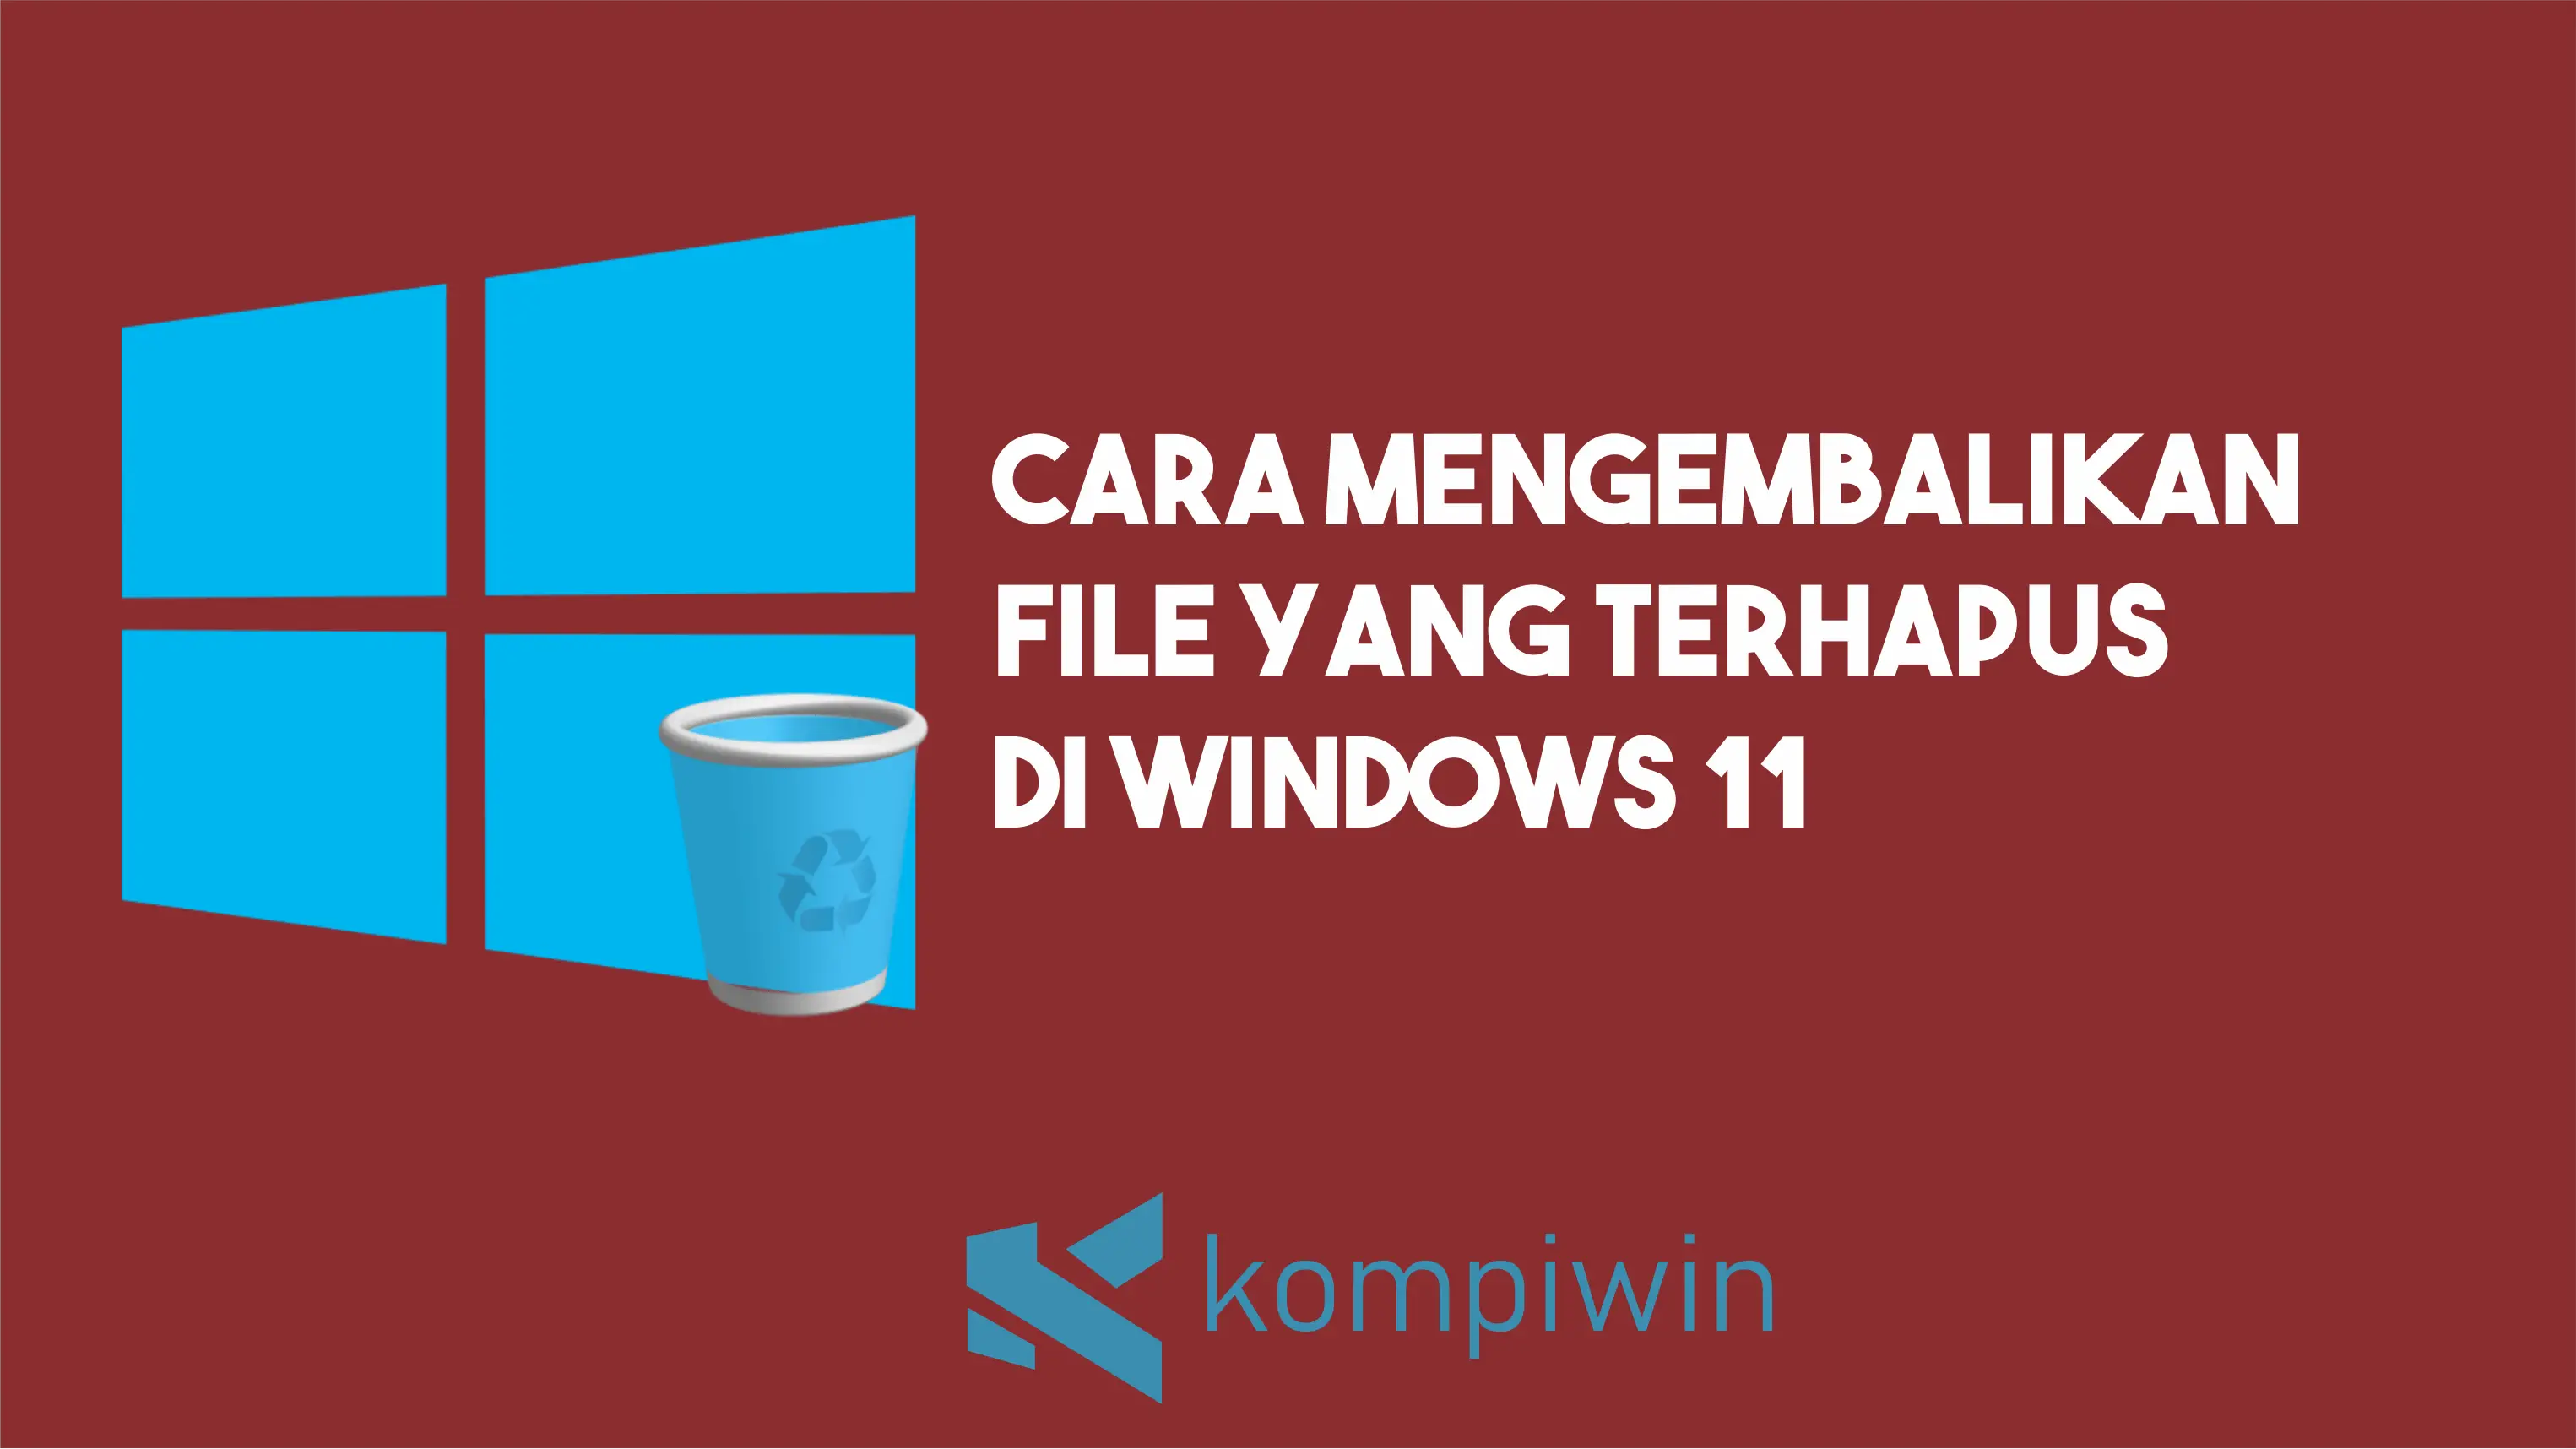 Cara Mengembalikan File Yang Terhapus di Windows 11